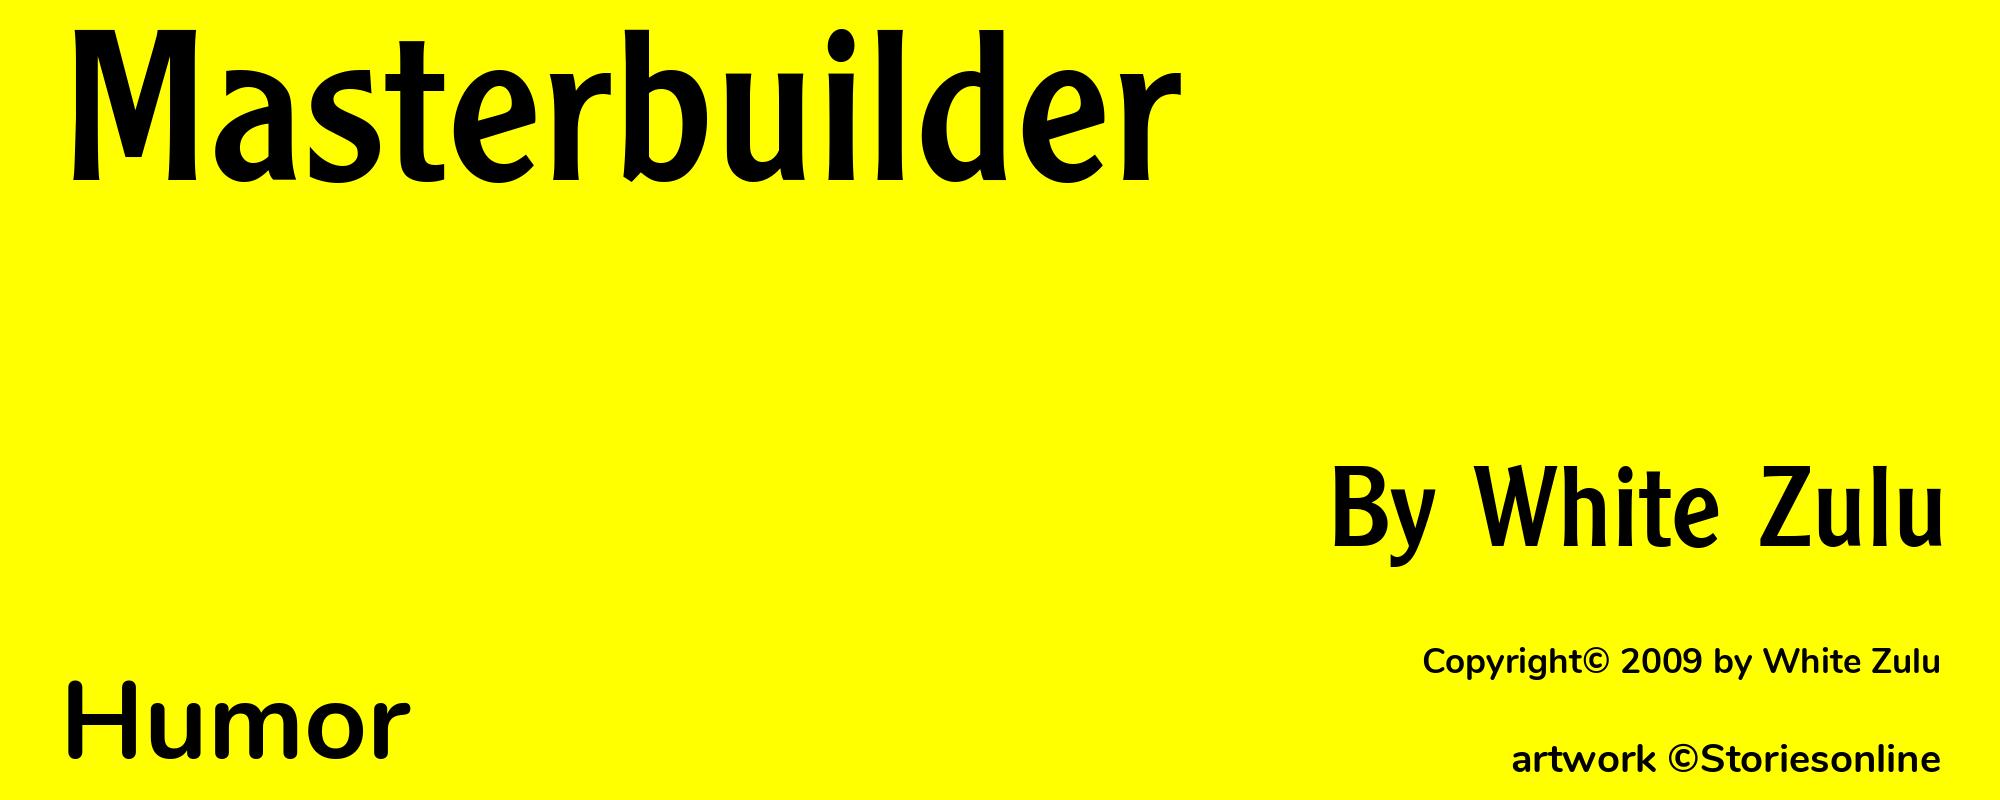 Masterbuilder - Cover